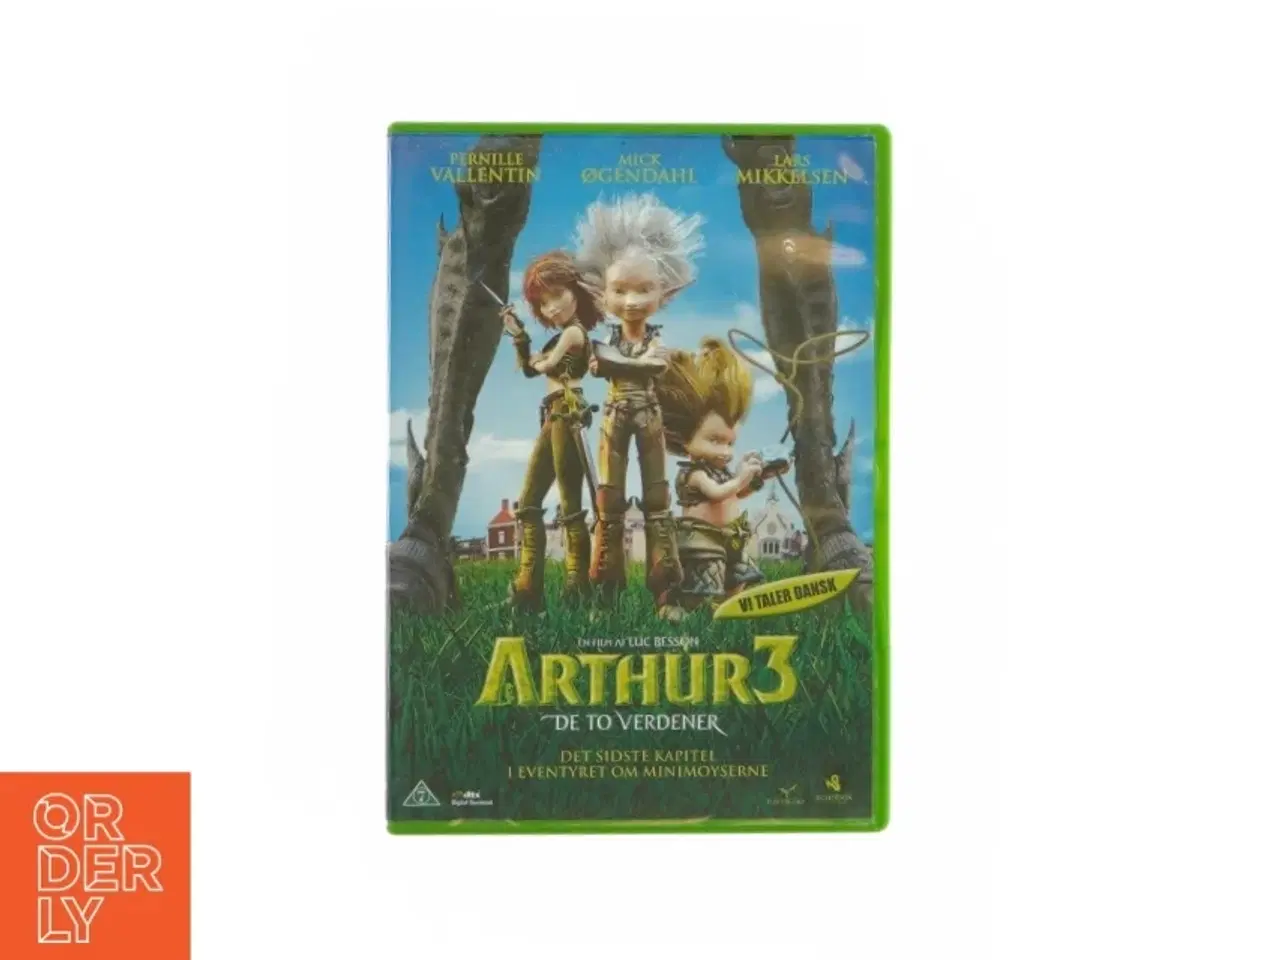 Billede 1 - Artur 3 de to verdener (DVD)